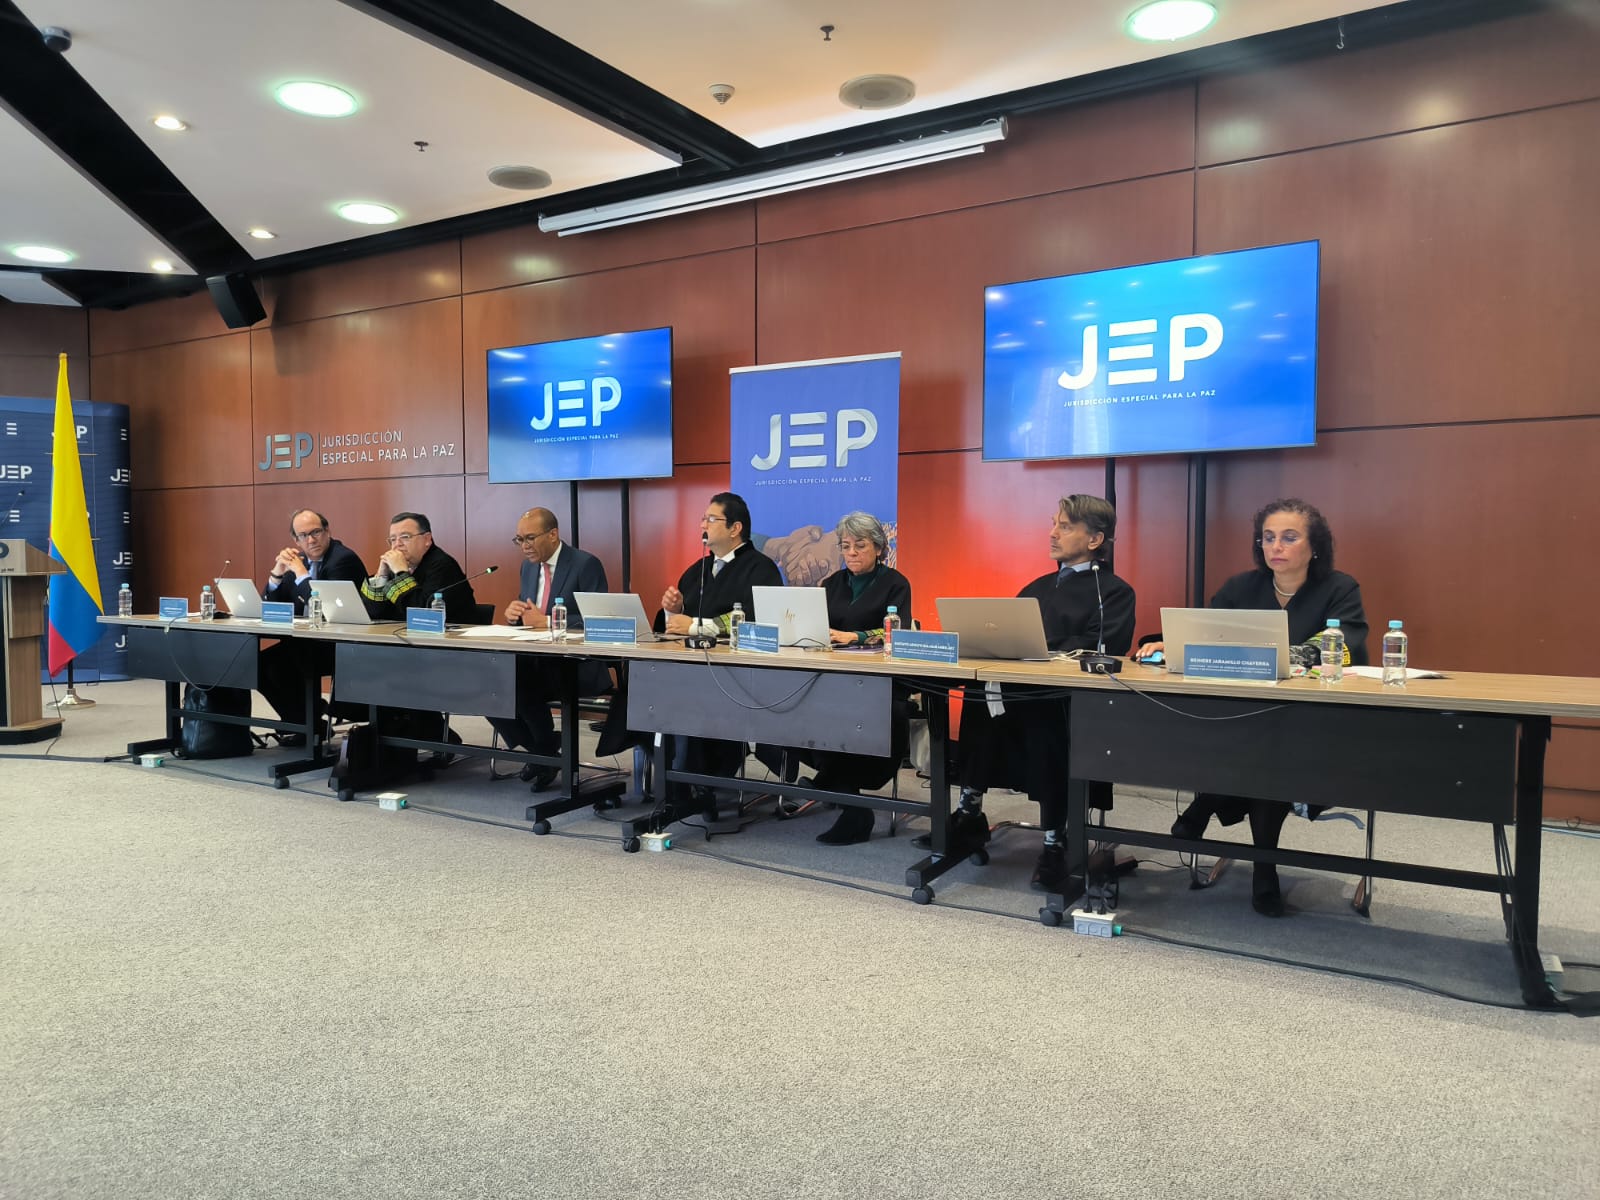 Organizaciones de víctimas y defensoras de derechos humanos rechazan la forma como la JEP ha impulsado y organizado la Audiencia Pública Nacional de Medidas Cautelares